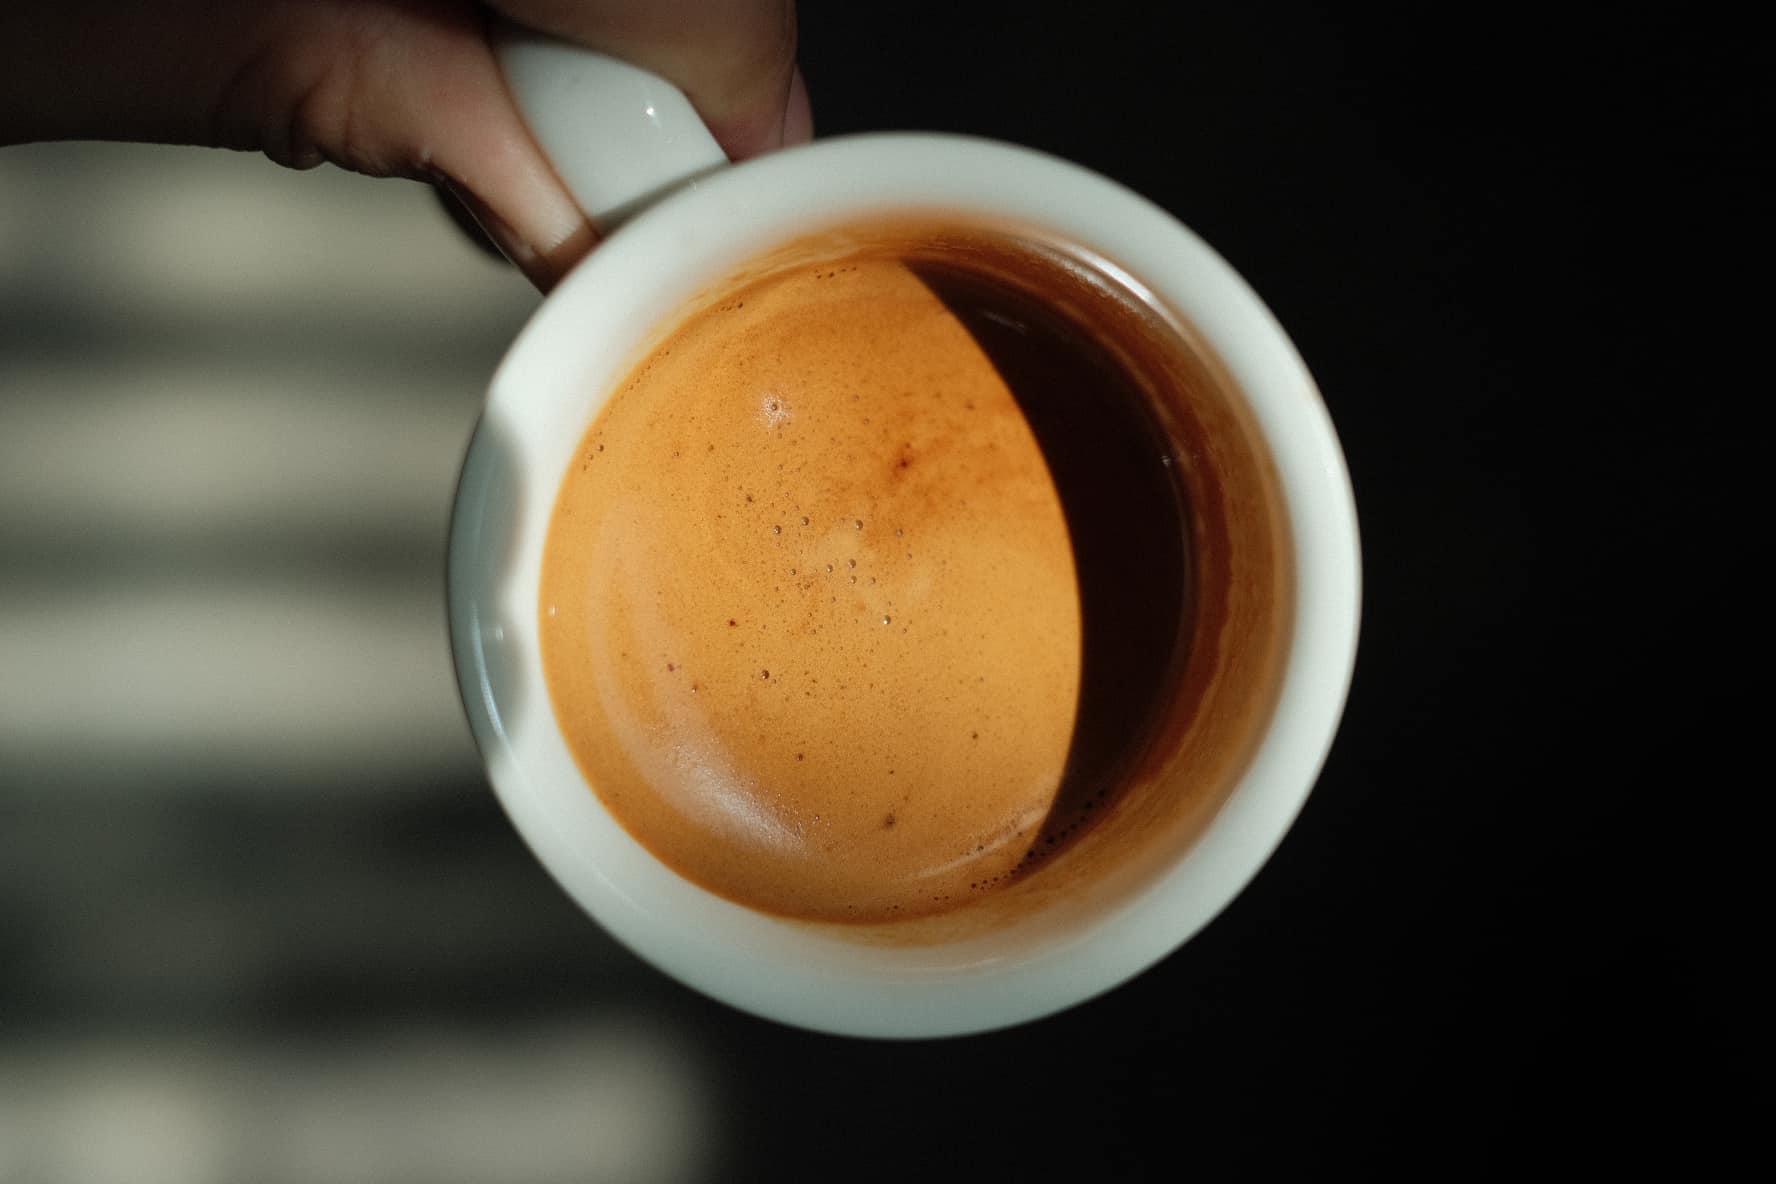 Crema – Những tranh cãi thú vị xung quanh lớp bọt sánh mịn của espresso